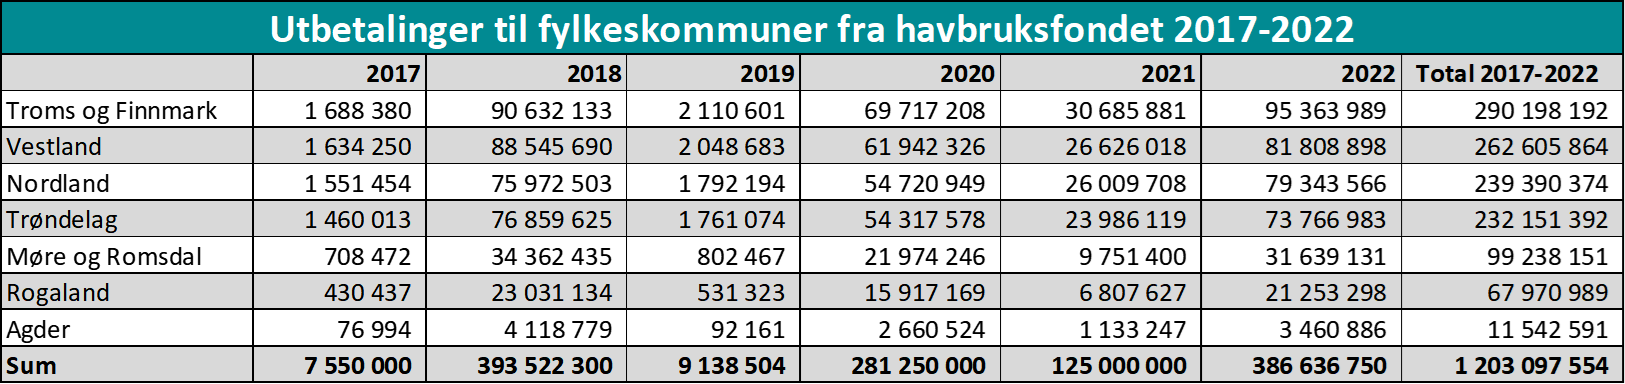 Utbetalinger til fylkeskommuner fra havbruksfondet 2017-2022